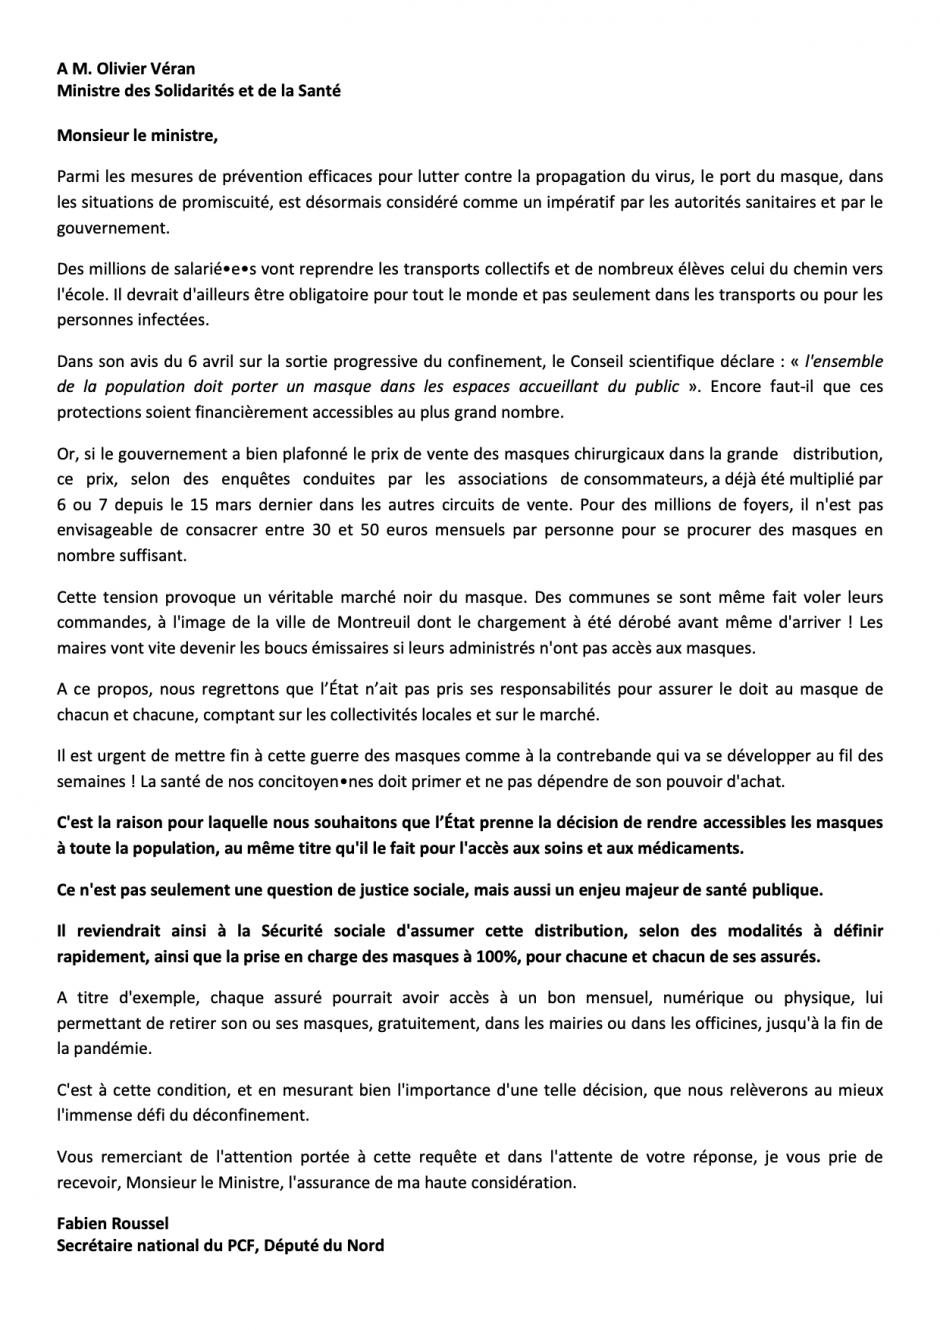 Lettre de Fabien Roussel à Olivier Véran, ministre des Solidarités et de la Santé, sur la gratuité des masques - 11 mai 2020